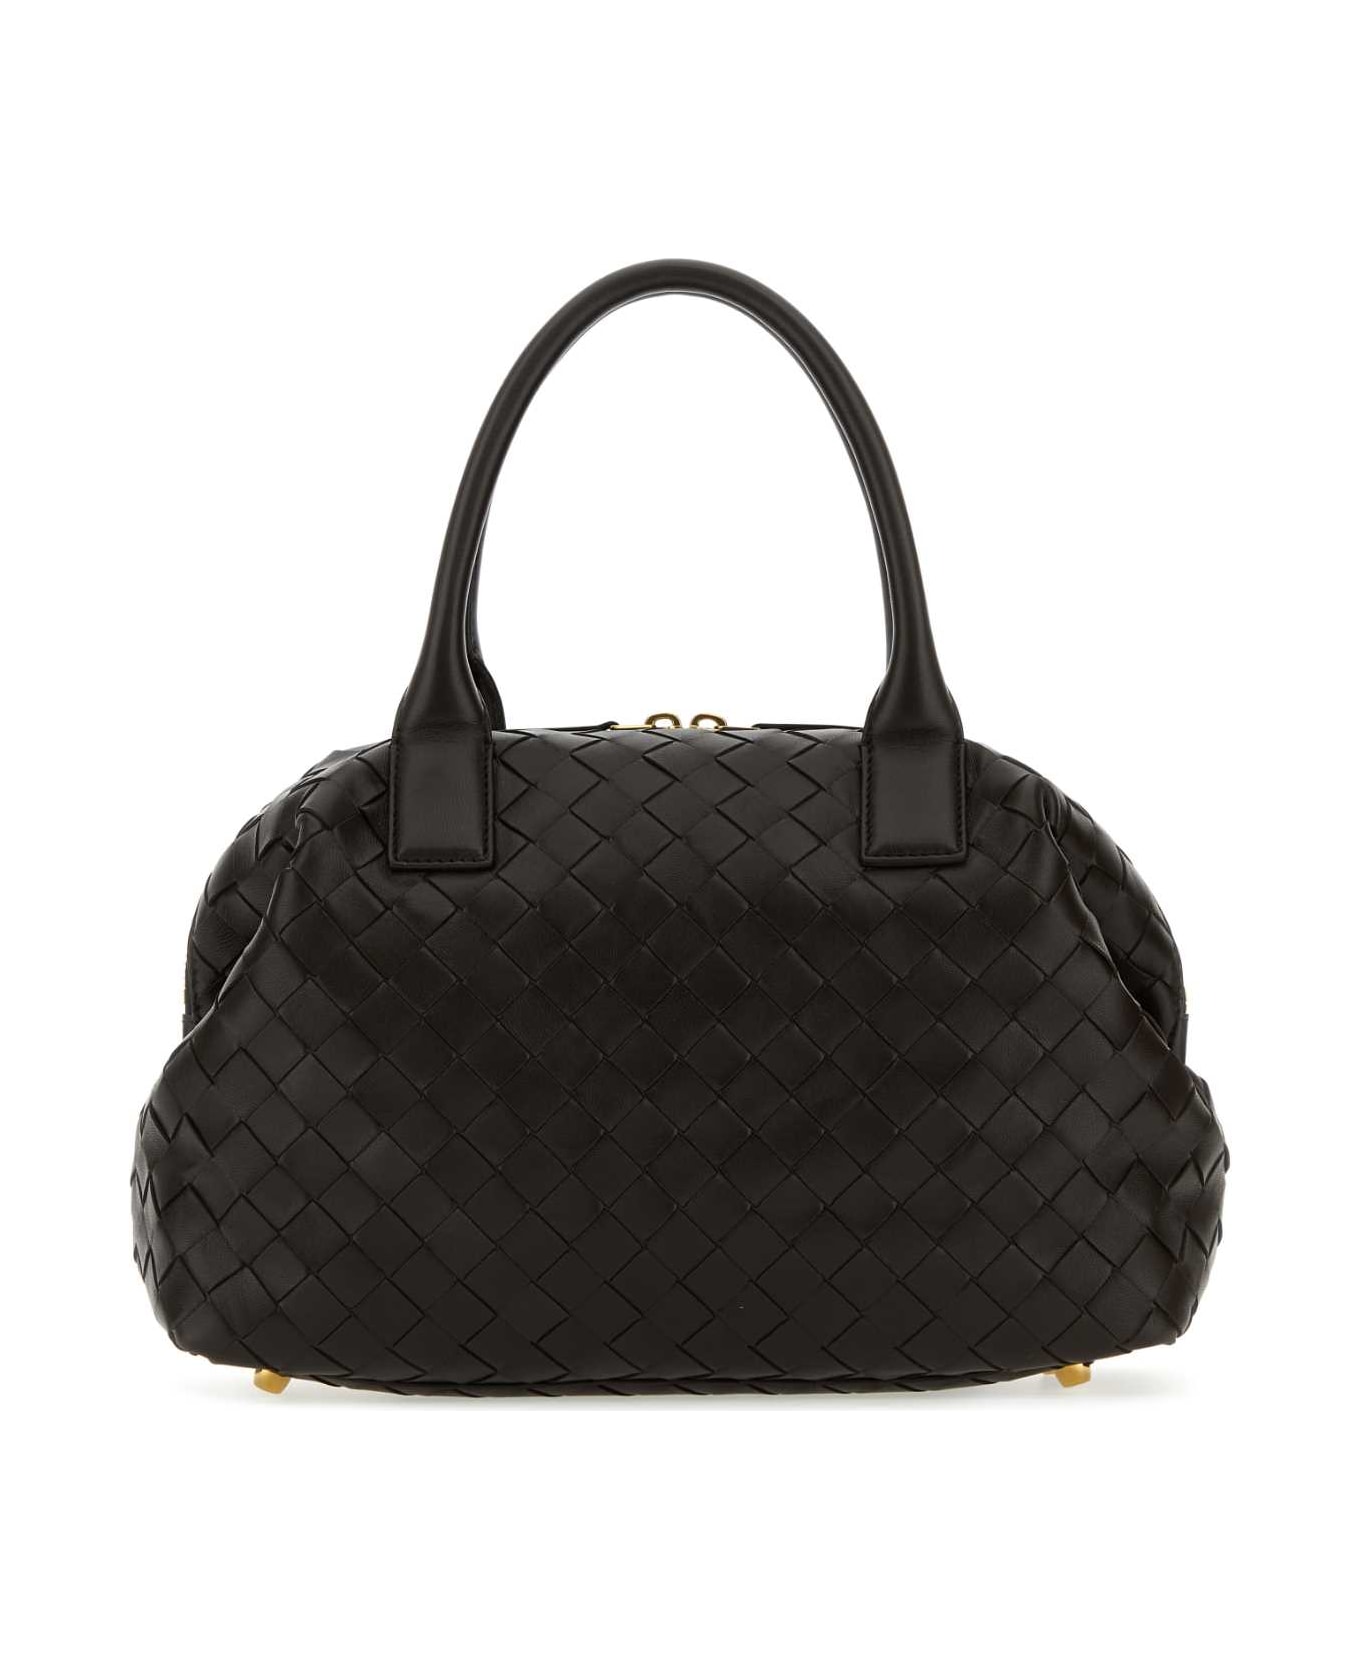 Bottega Veneta Dark Brown Nappa Leather Medium Handbag - FONDANT トートバッグ